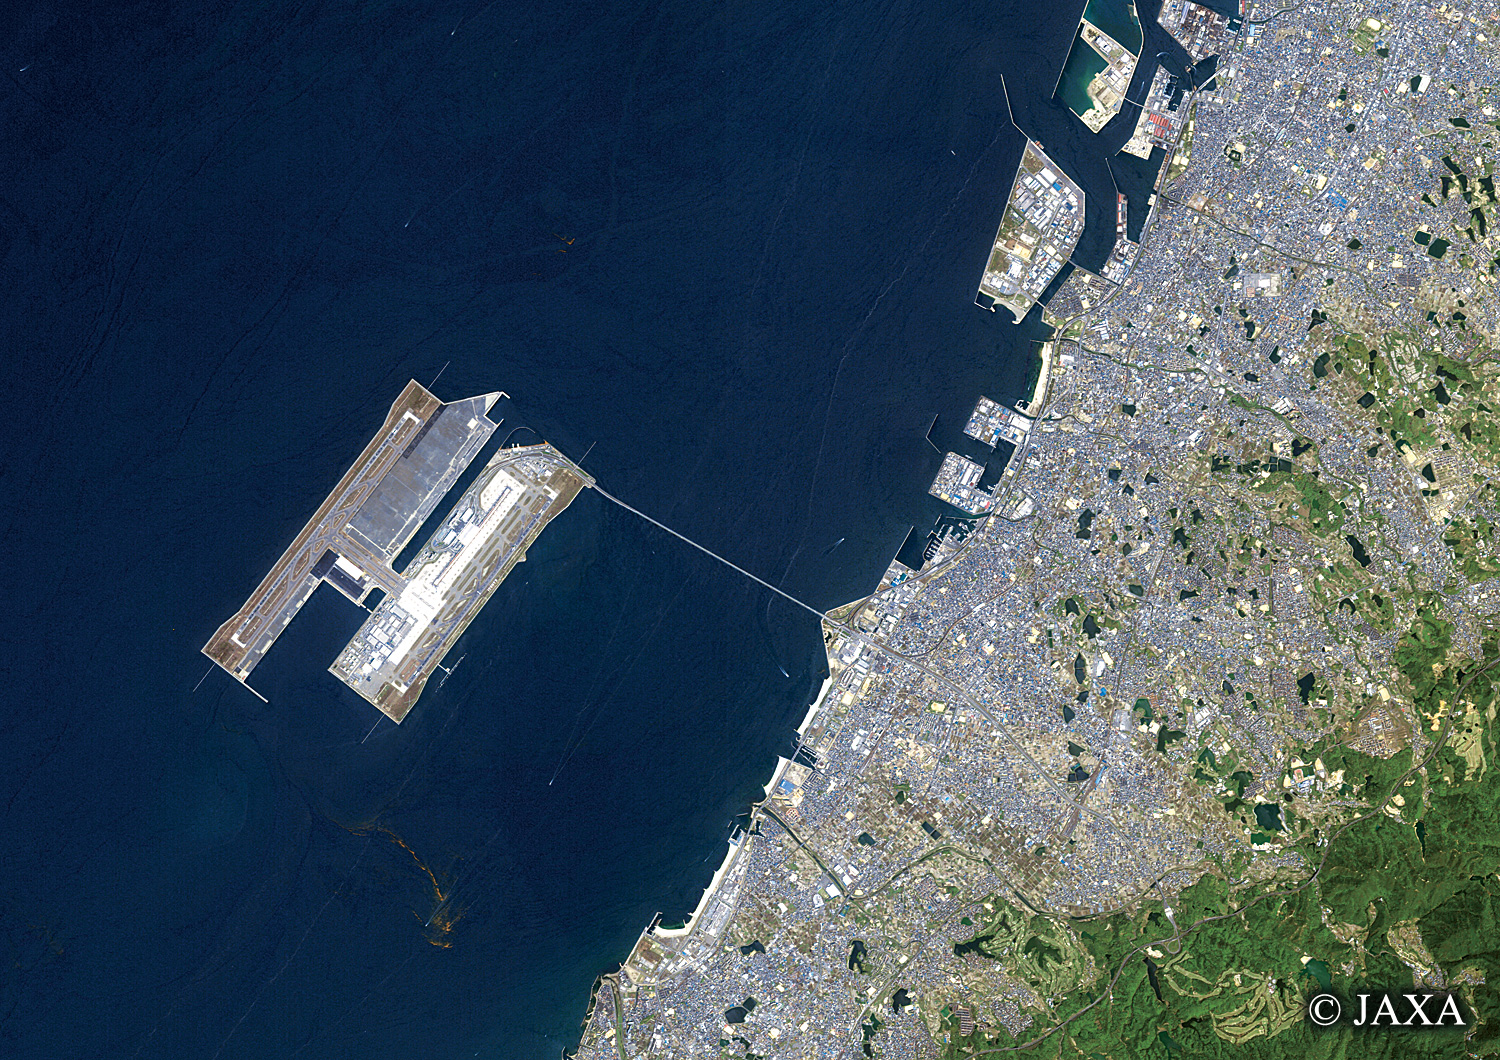 だいちから見た日本の都市 関西国際空港周辺地域:衛星画像